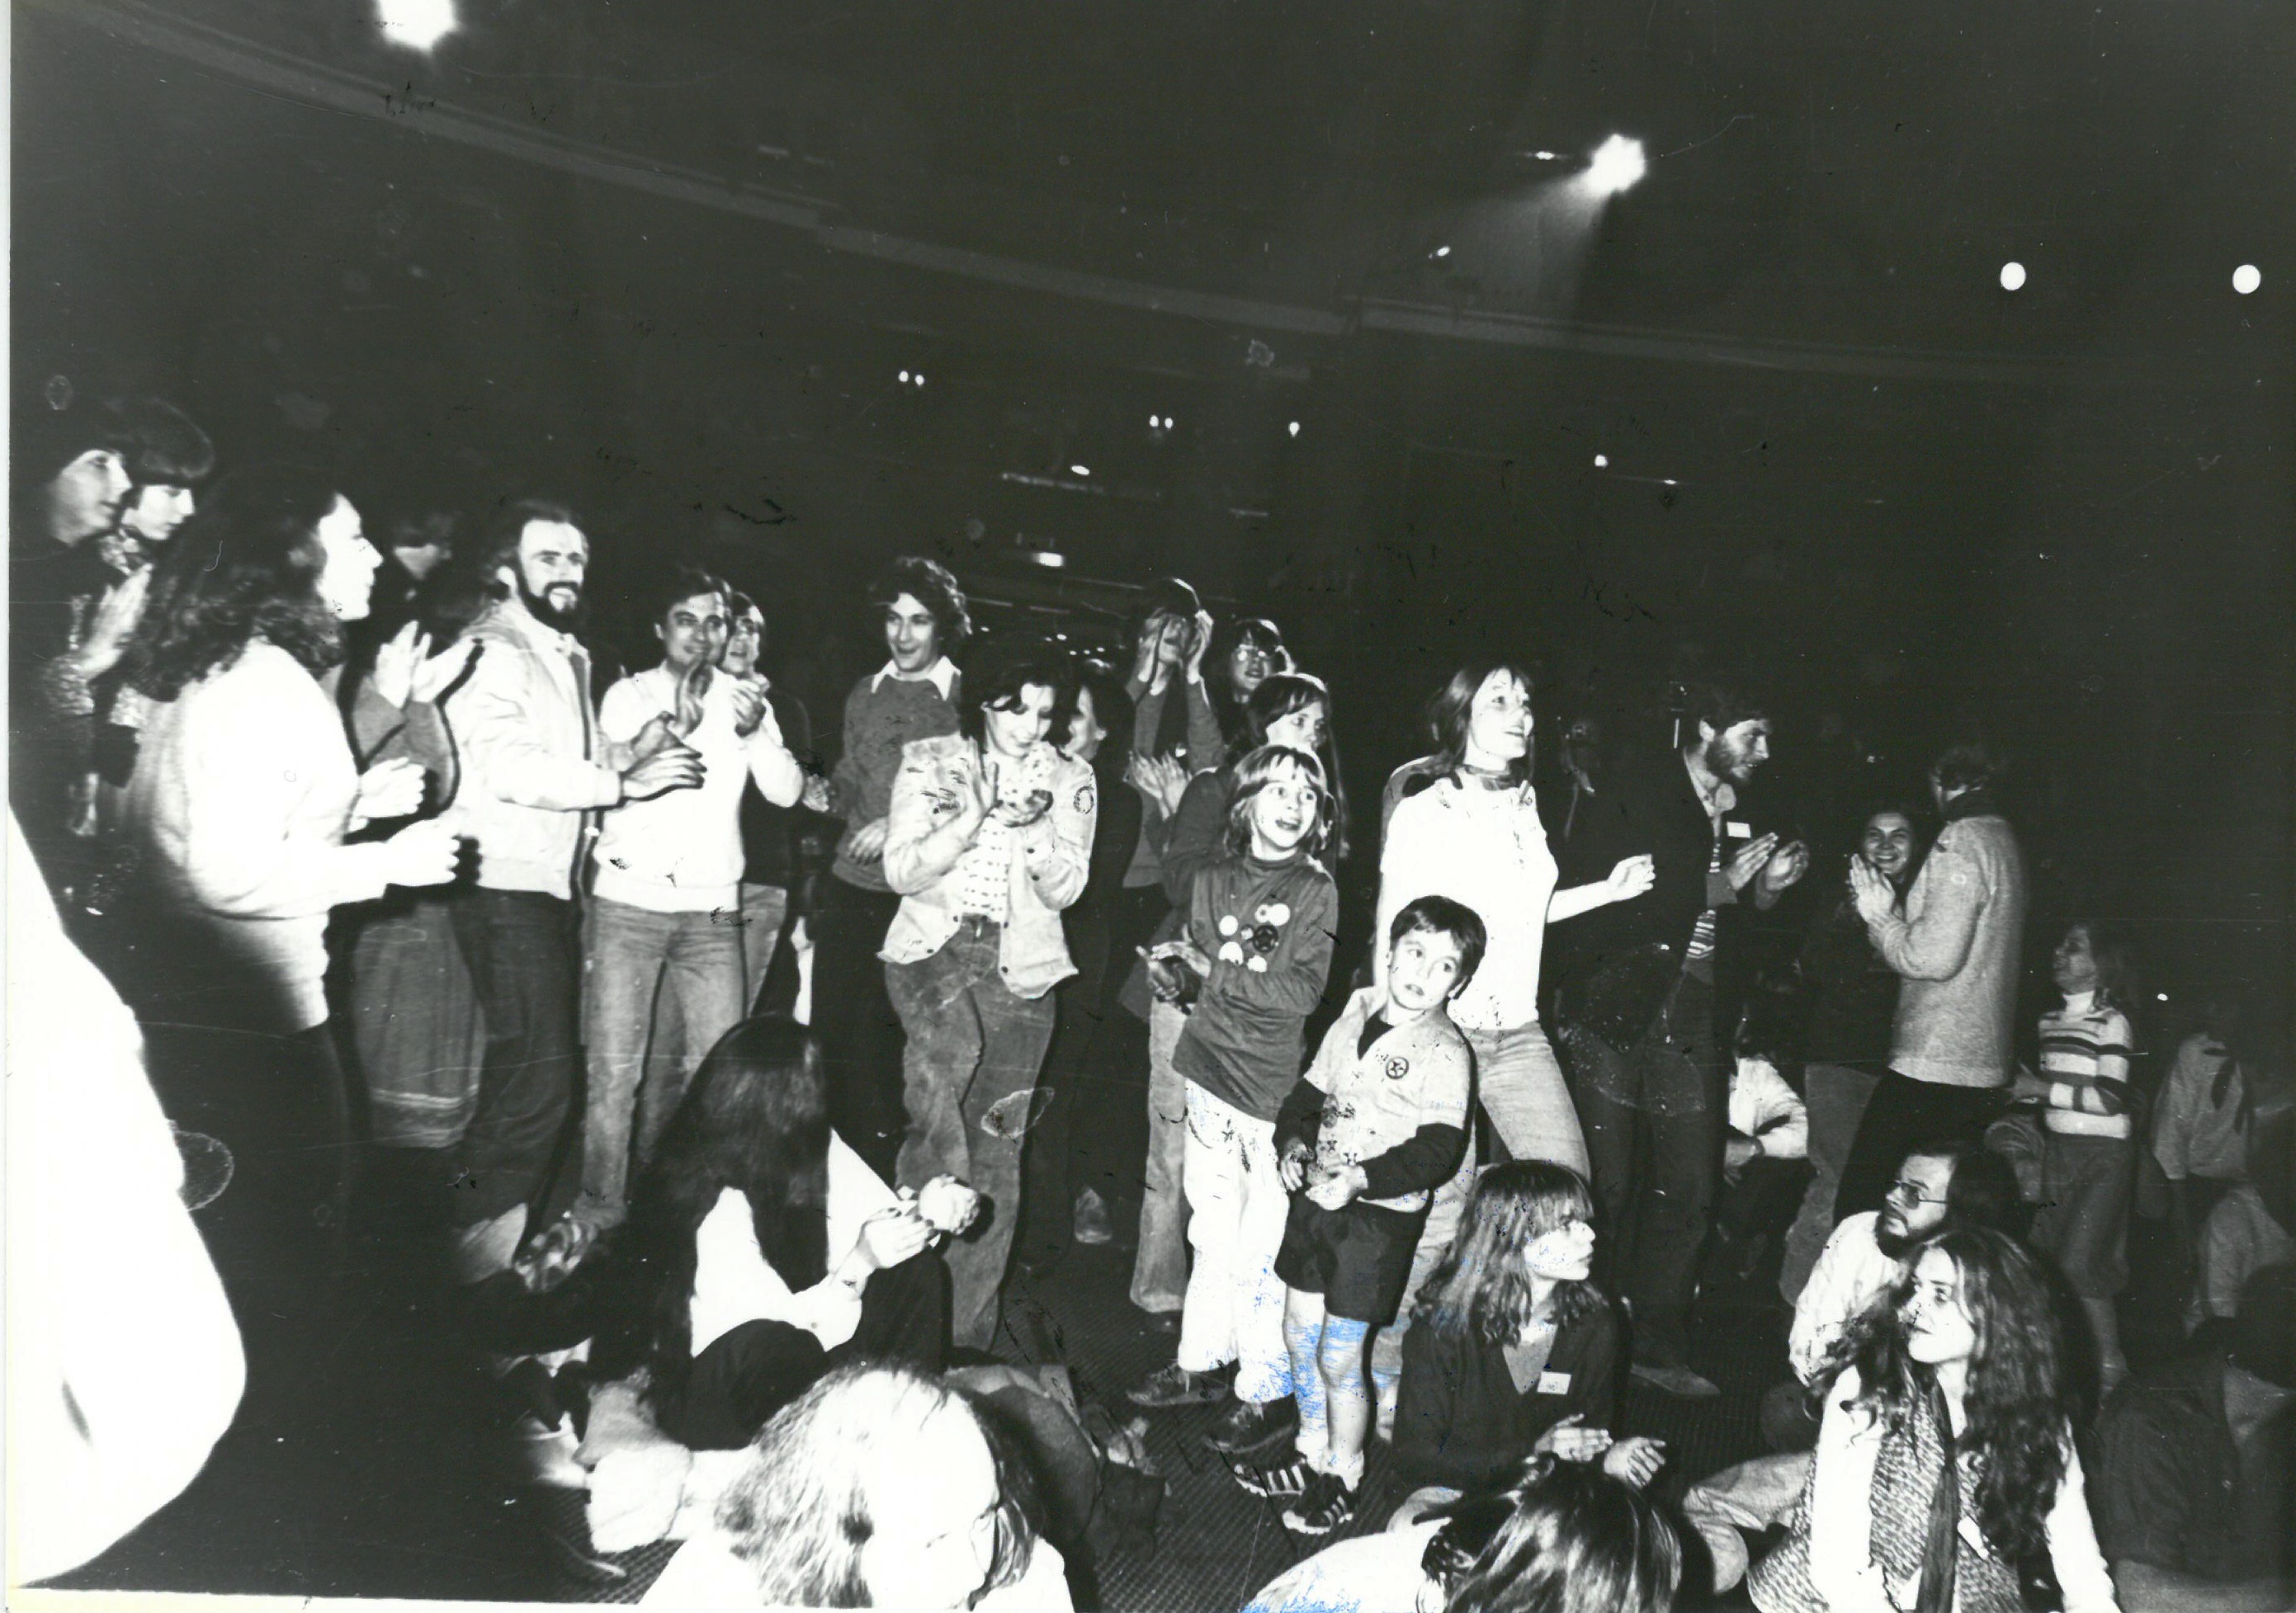 Concerto José Afonso , Bruxelas, 1978, contra festival Eurovisão. Elementos do “Luta Comum” de Londres que viajaram para assistir ao espectáculo